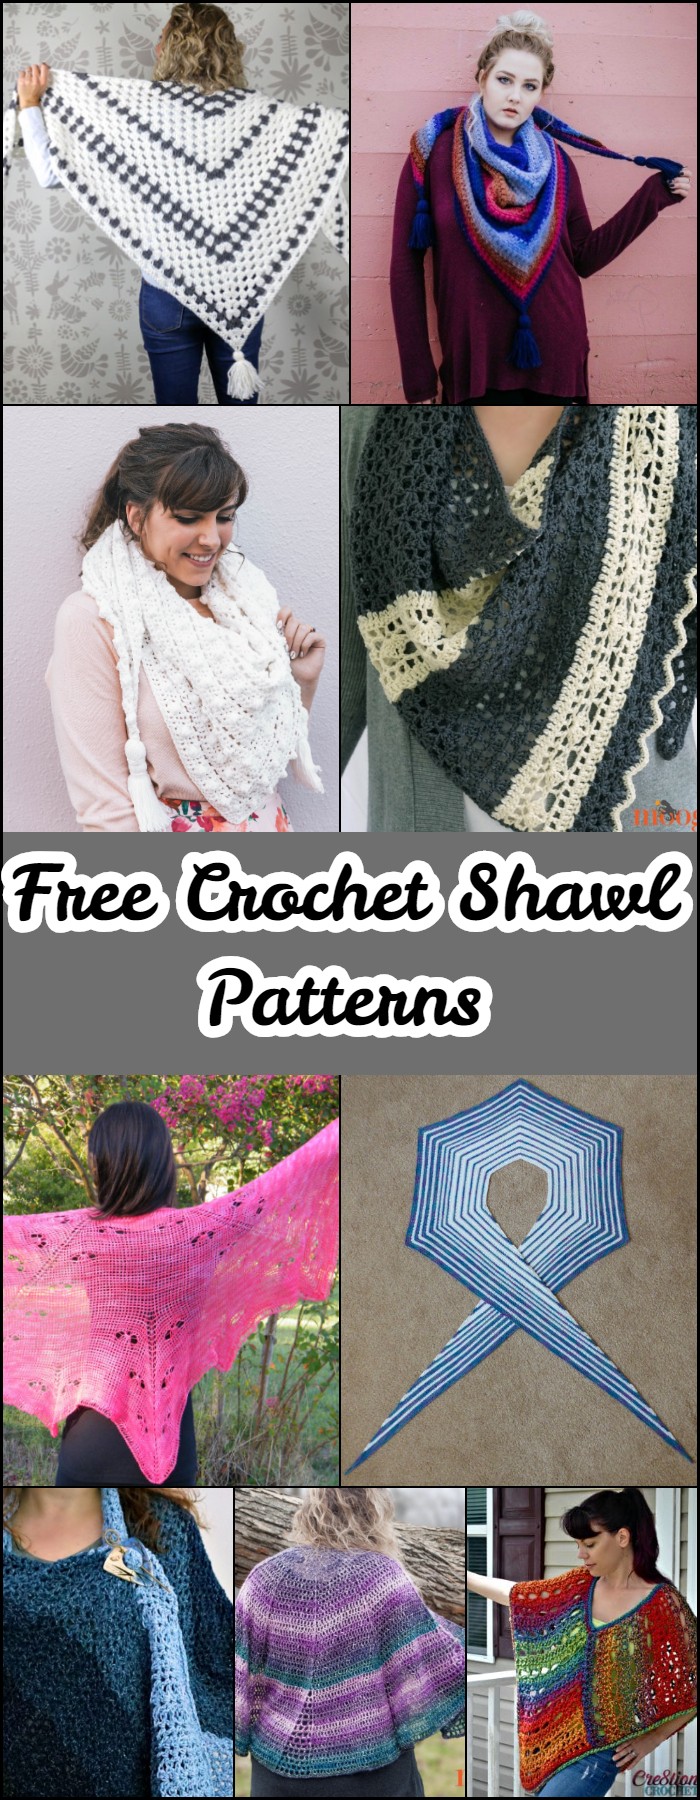 Free Crochet Shawl Patterns